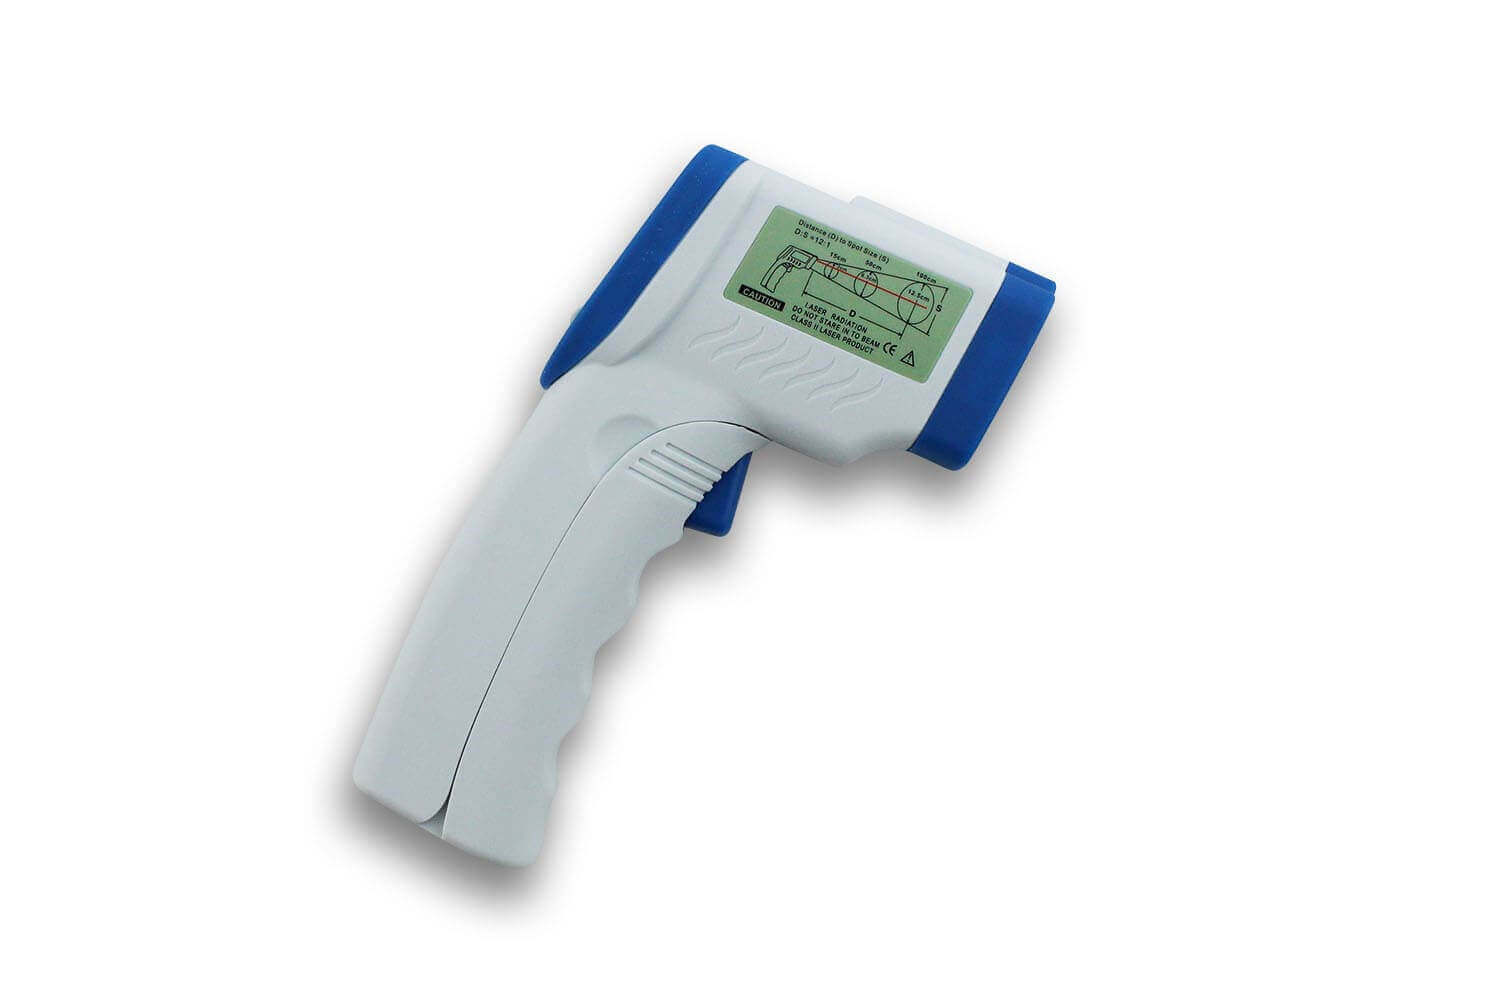 Thermomètre de cuisine infrarouge à visée laser